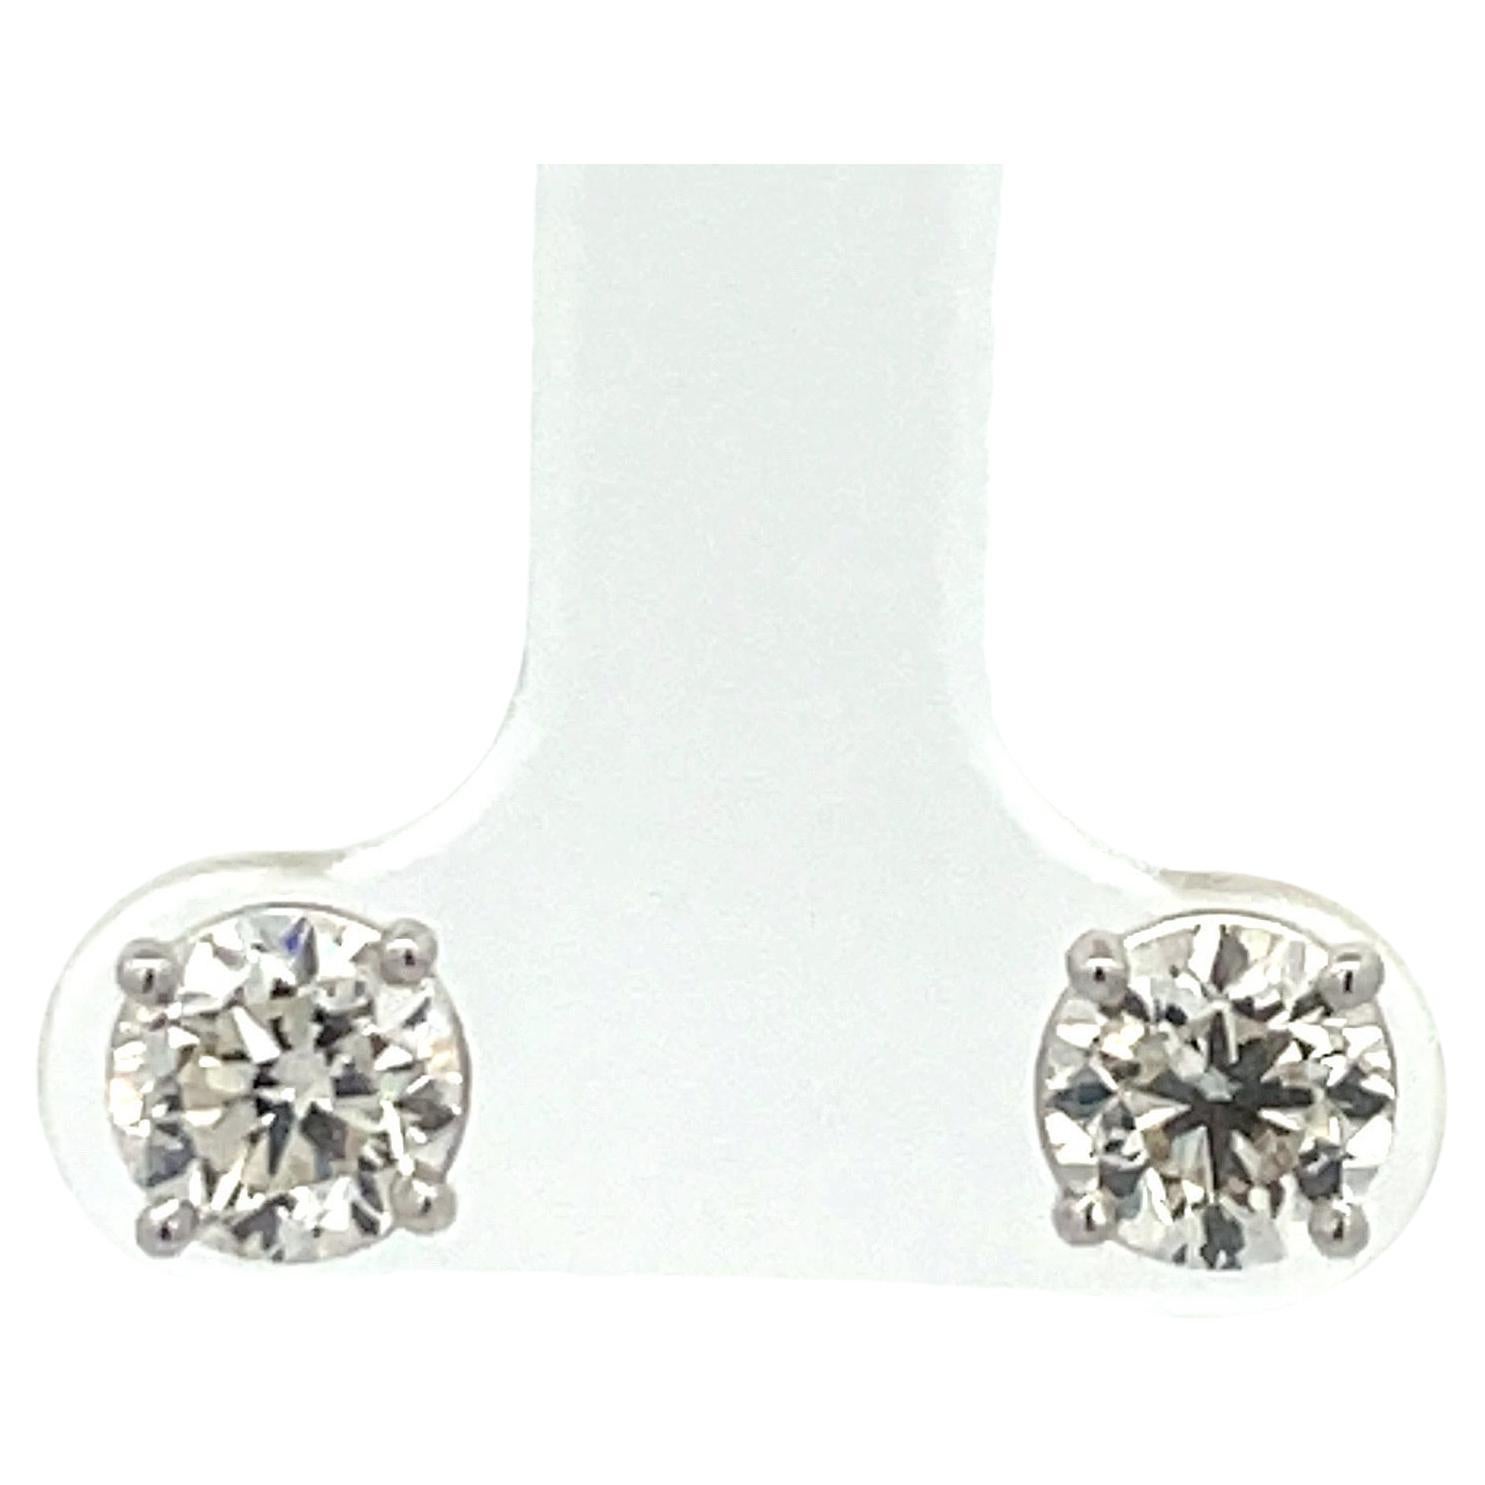 Diamond Stud Earring 1.86 Carats I-J VS2 14 Karat White Gold Basket Setting